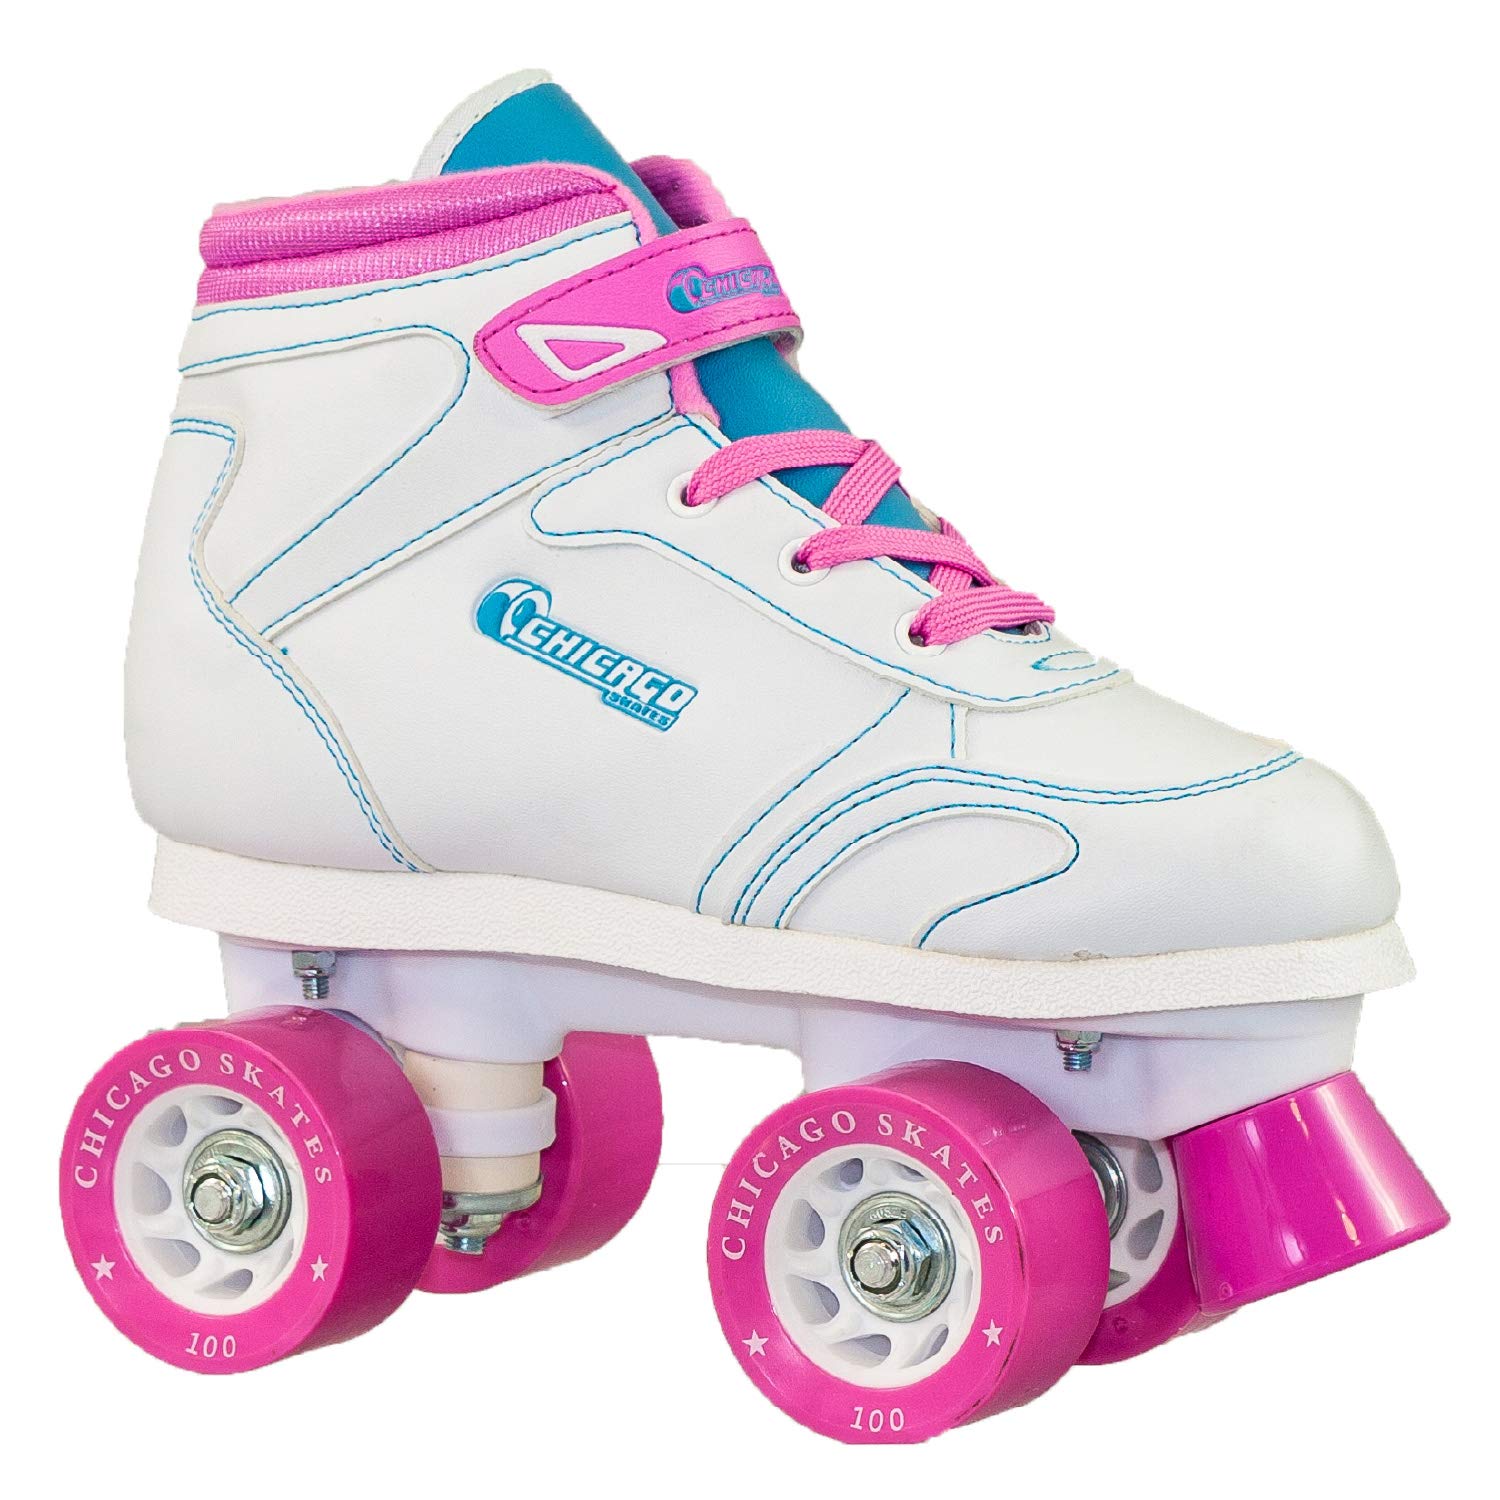 Chicago Girls Sidewalk Roller Skate